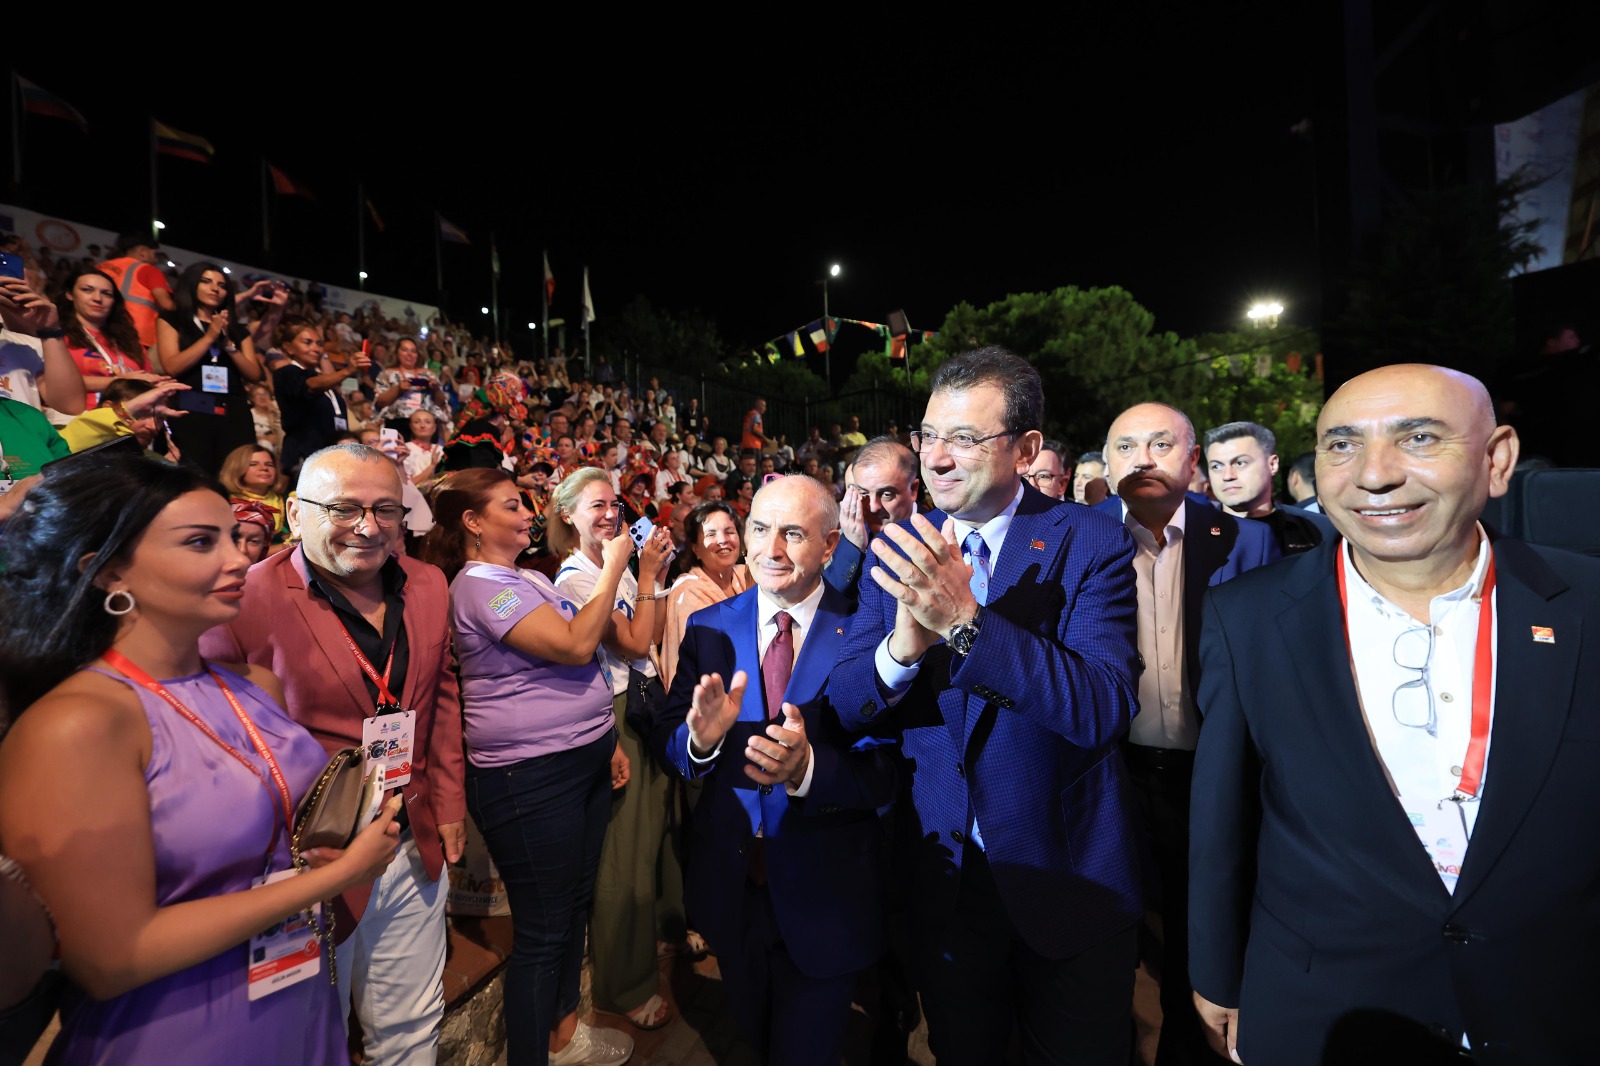 İmamoğlu: “En büyük hedefimiz 2036 olimpiyatlarını da İstanbul’da yapmak